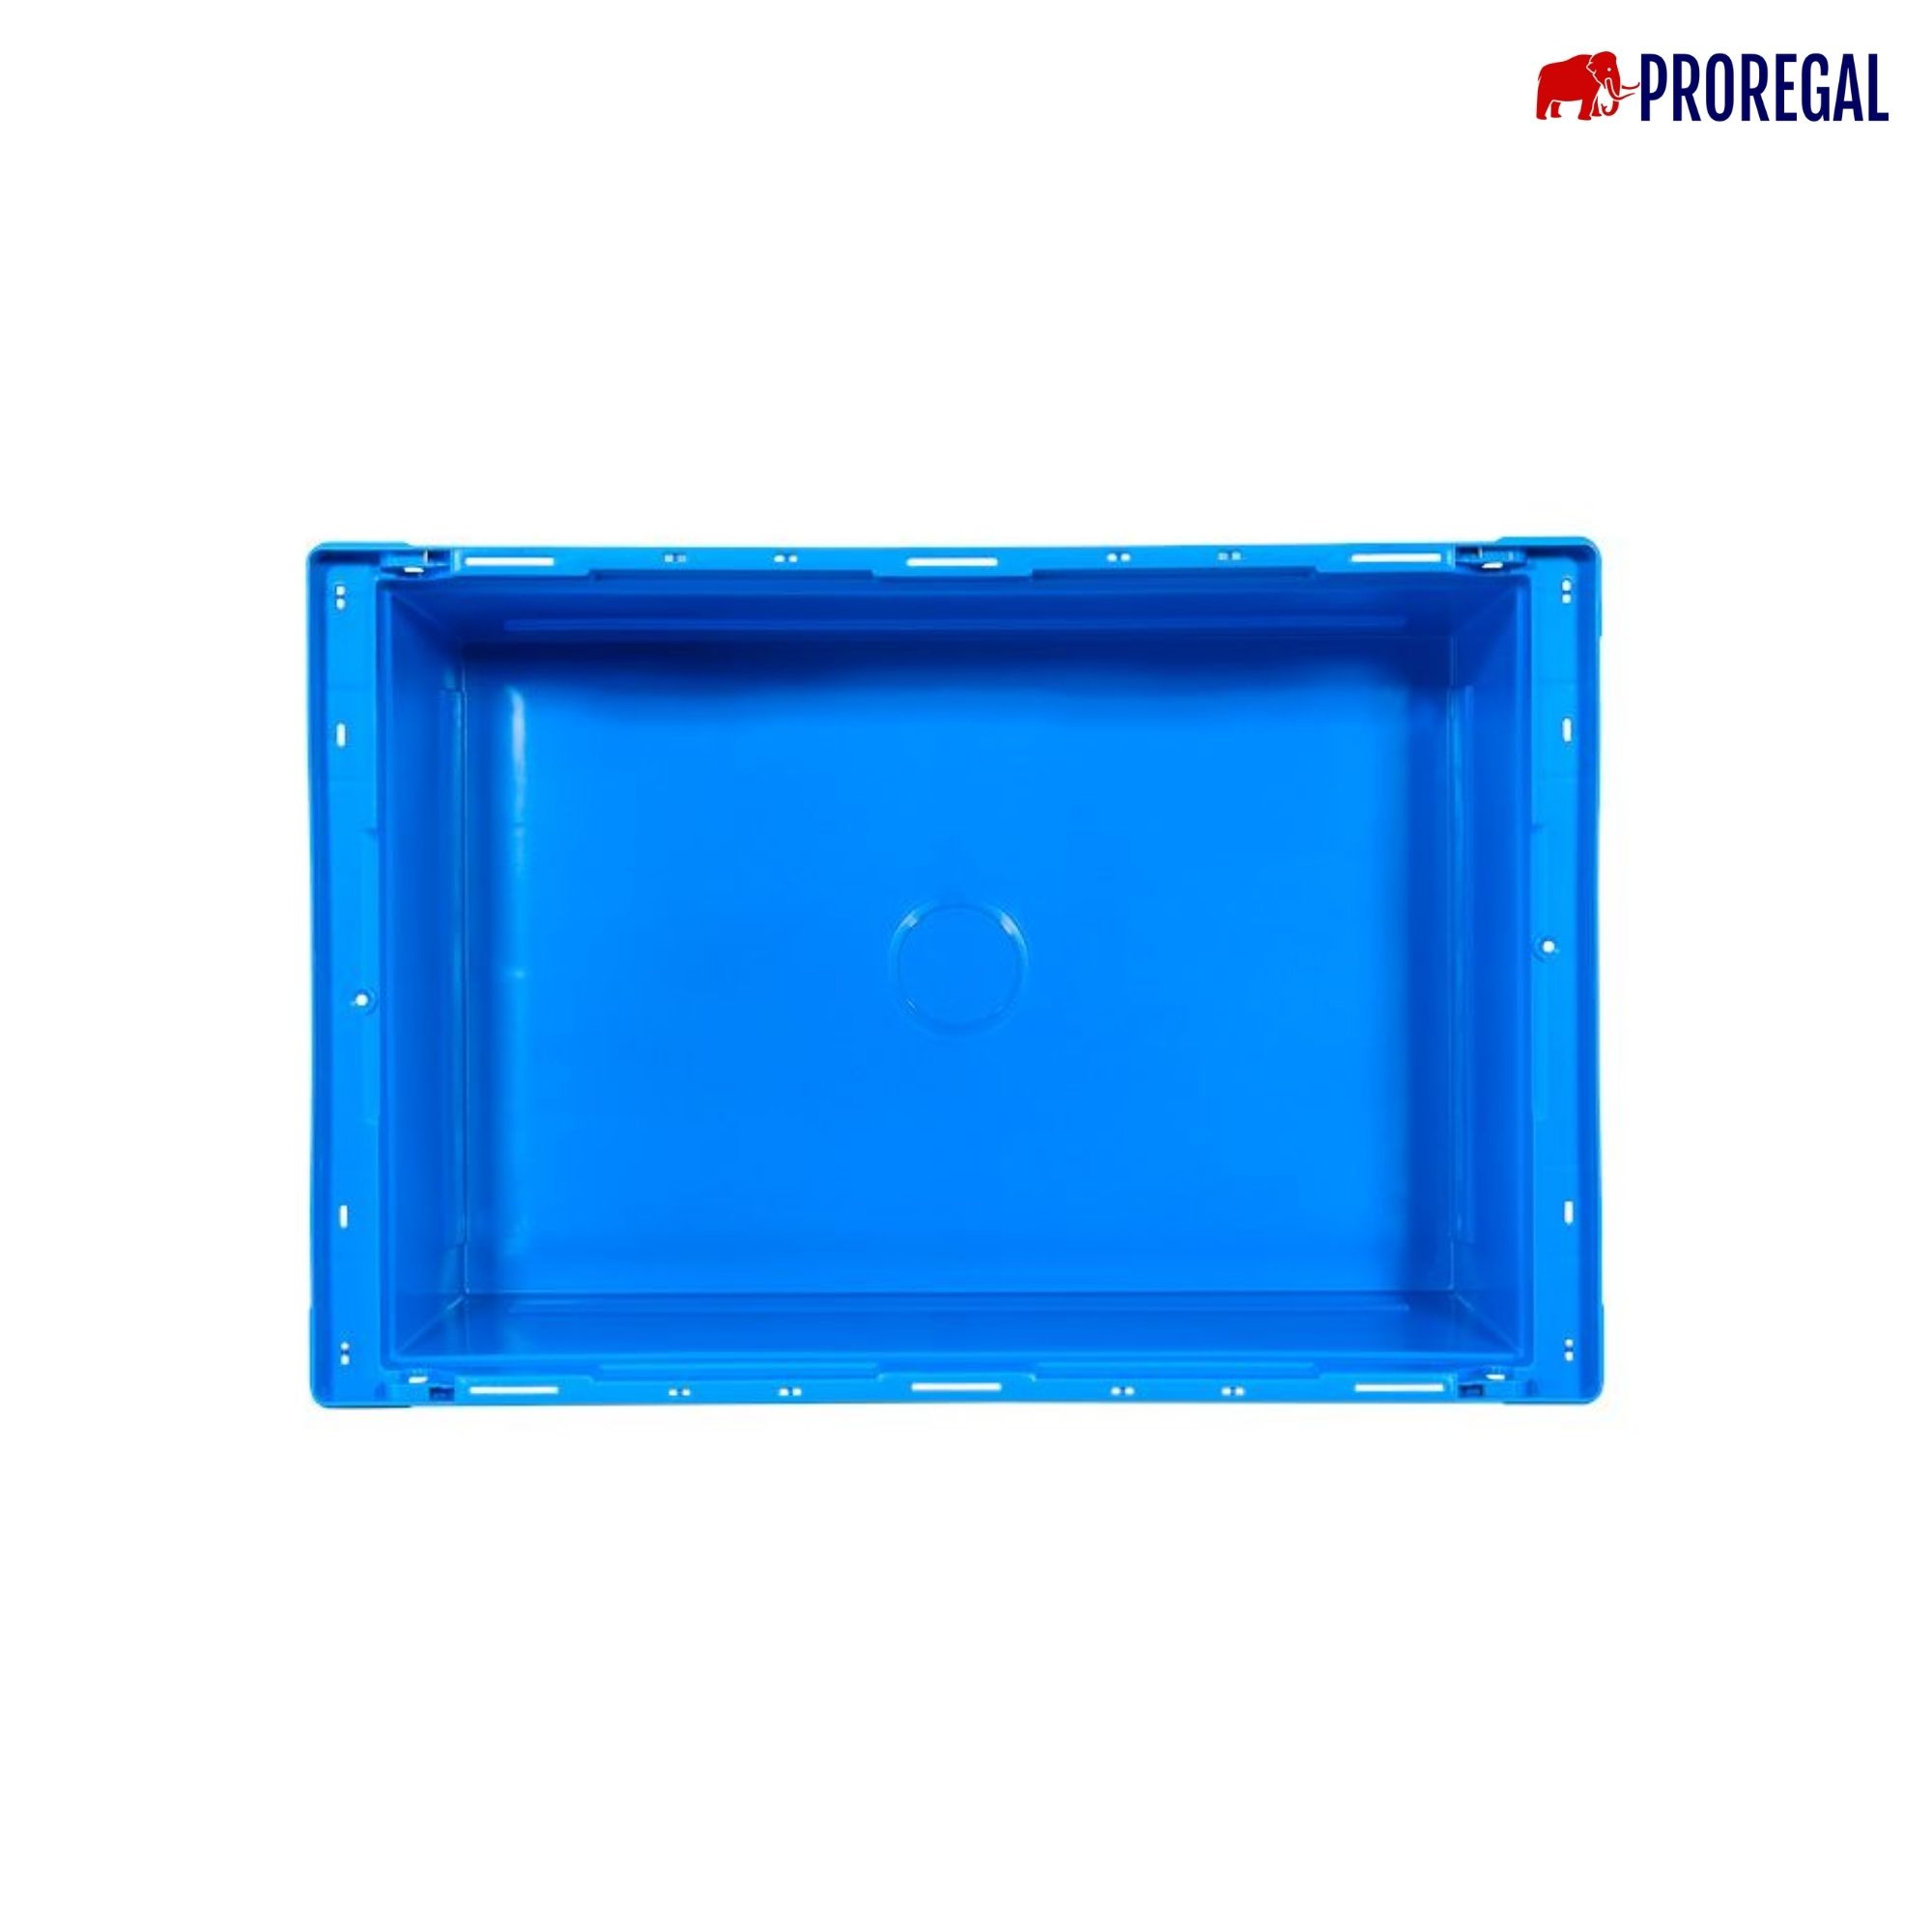 SuperSparSet 6x Conical Mehrweg-Stapelbehälter mit Stapelbügel Blau | HxBxT 32,3x40x60cm | 58 Liter | Lagerbox Eurobox Transportbox Transportbehälter Stapelbehälter